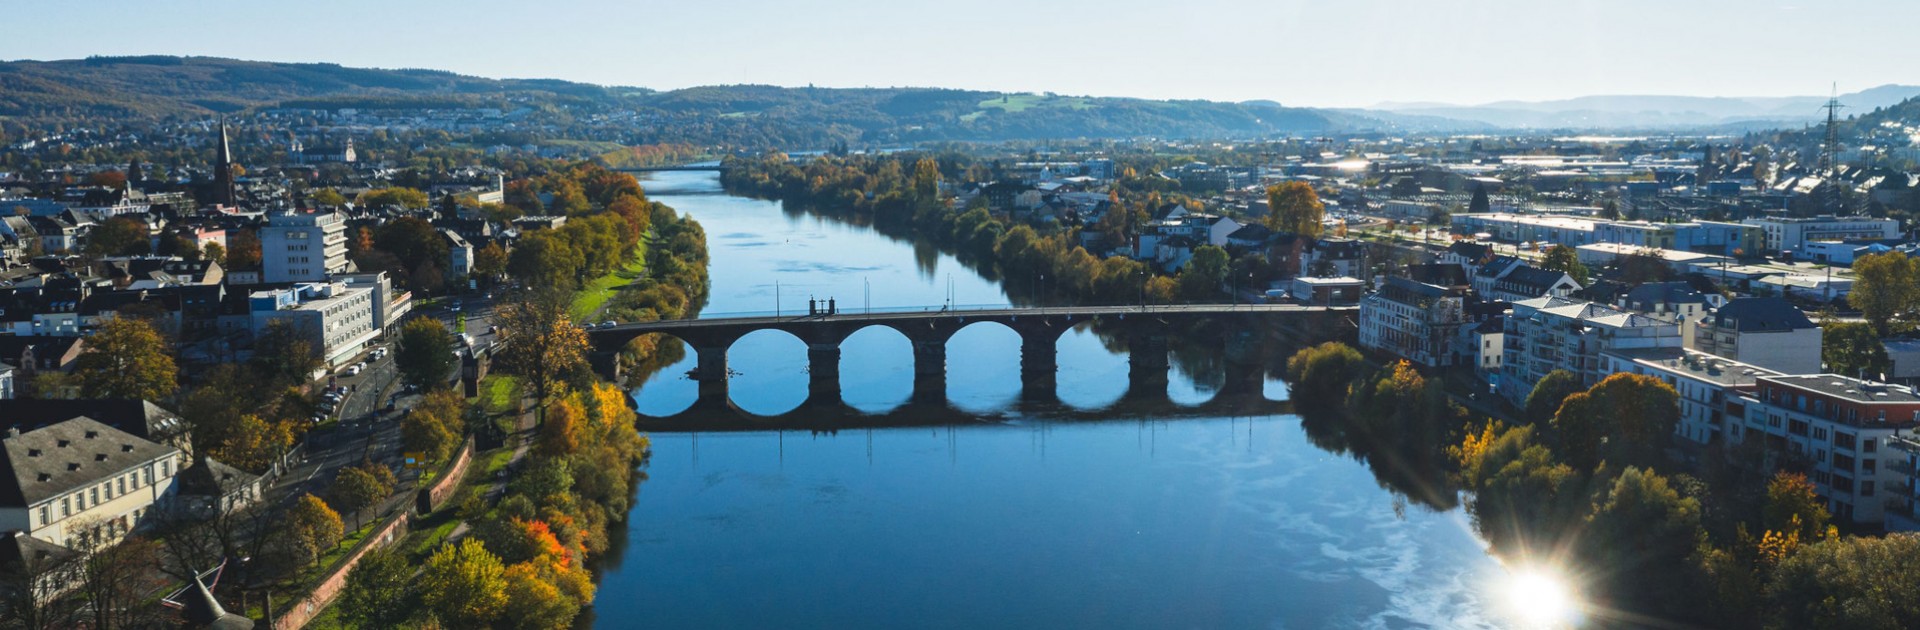 Luftbild Trier mit Mosel und Römerbrücke - © Victor Beusch / Trier Tourismus und Marketing GmbH